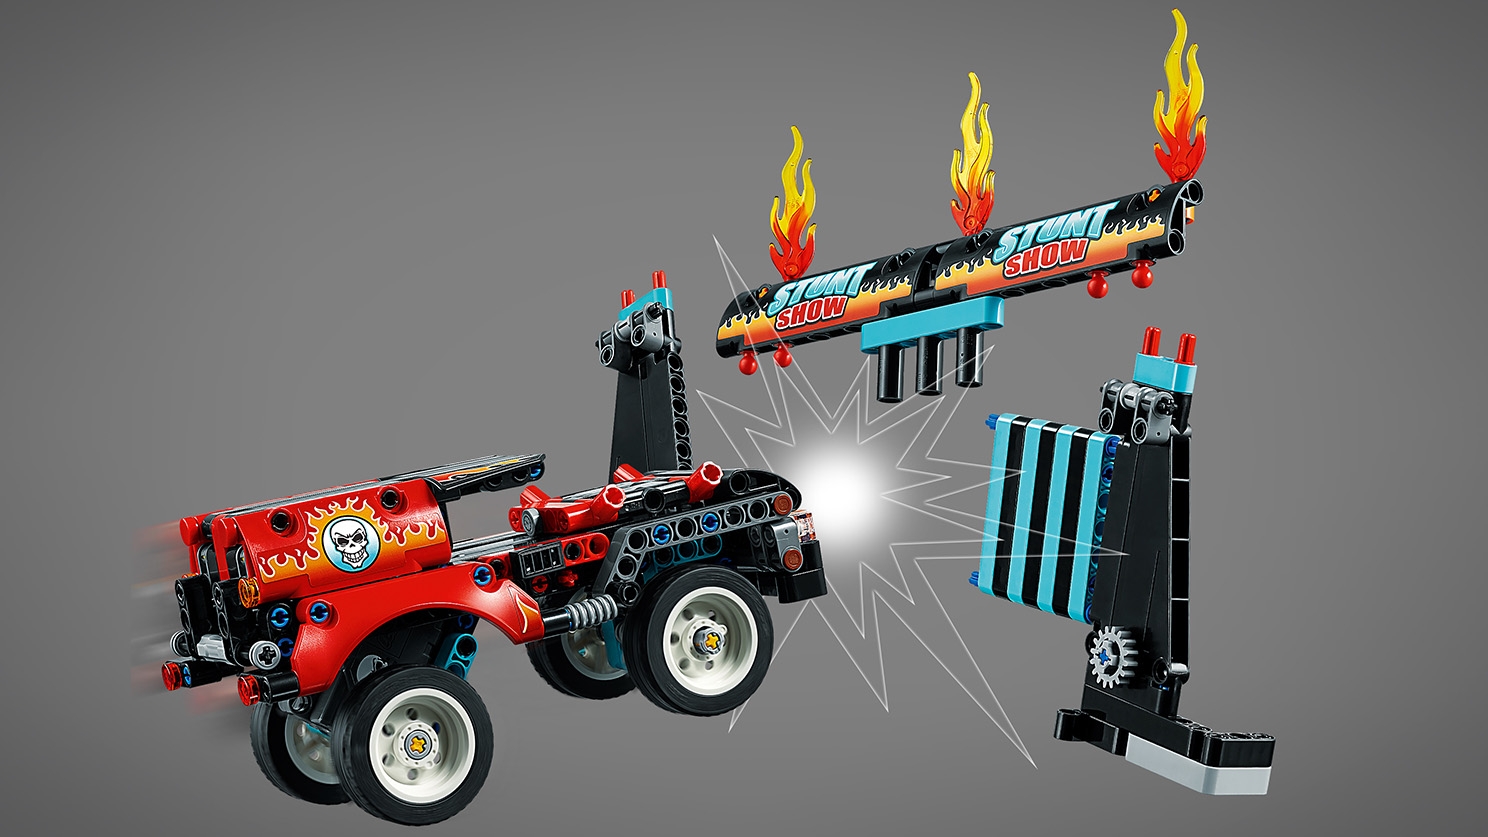 LEGO Technic 42106 Le Spectacle de Cascades du Camion et de la Moto